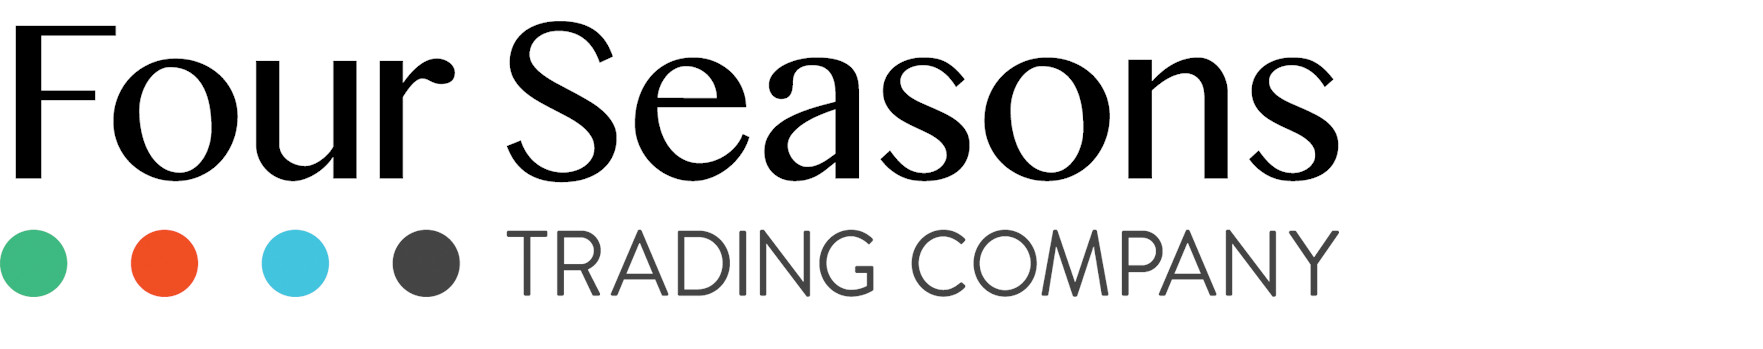 FourSeasons Trading Company